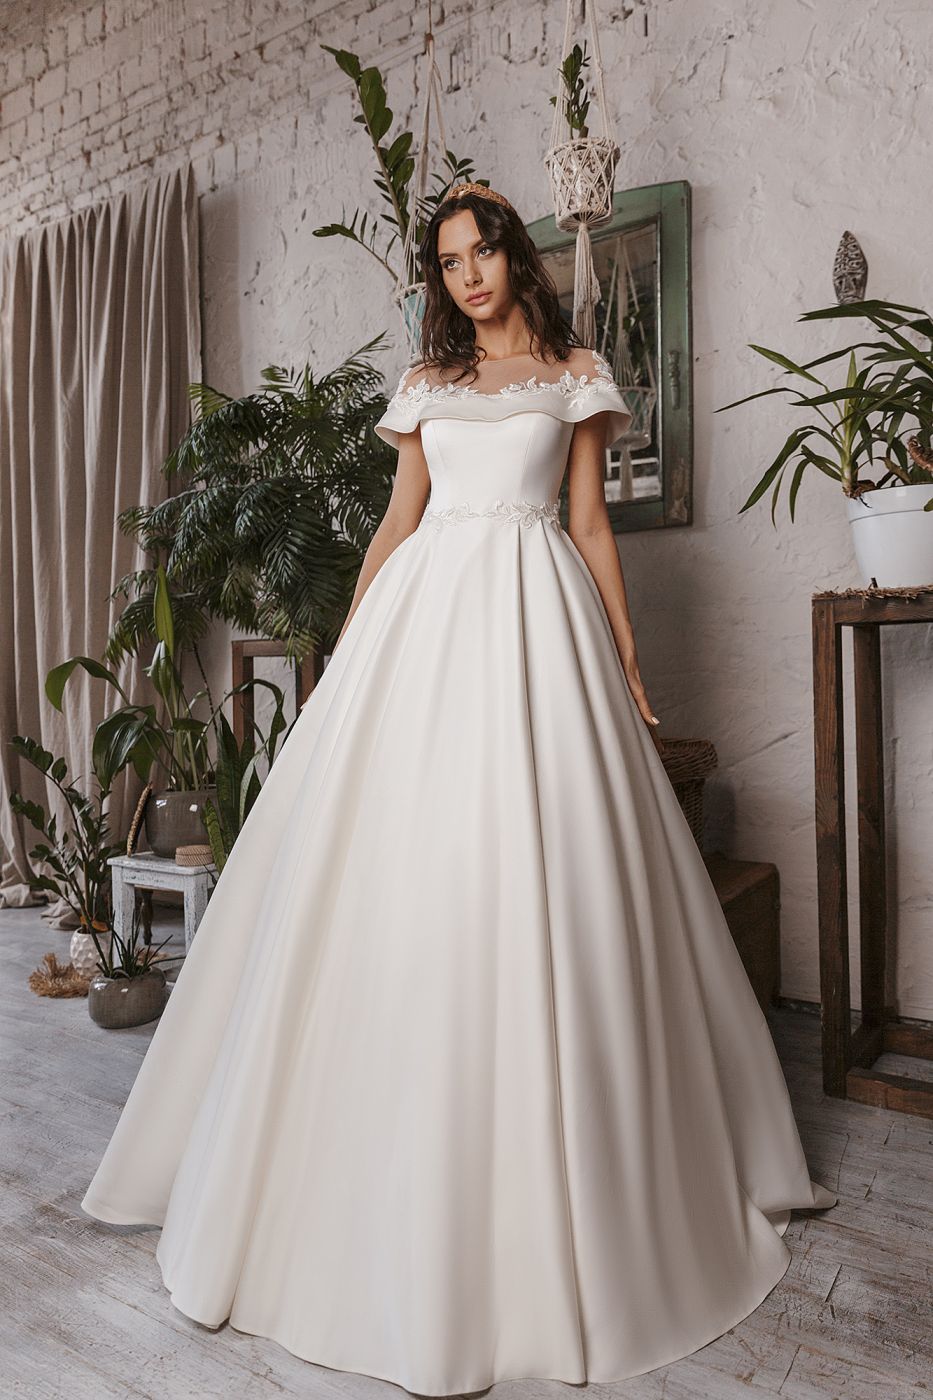 Пышное свадебное платье Арт.026